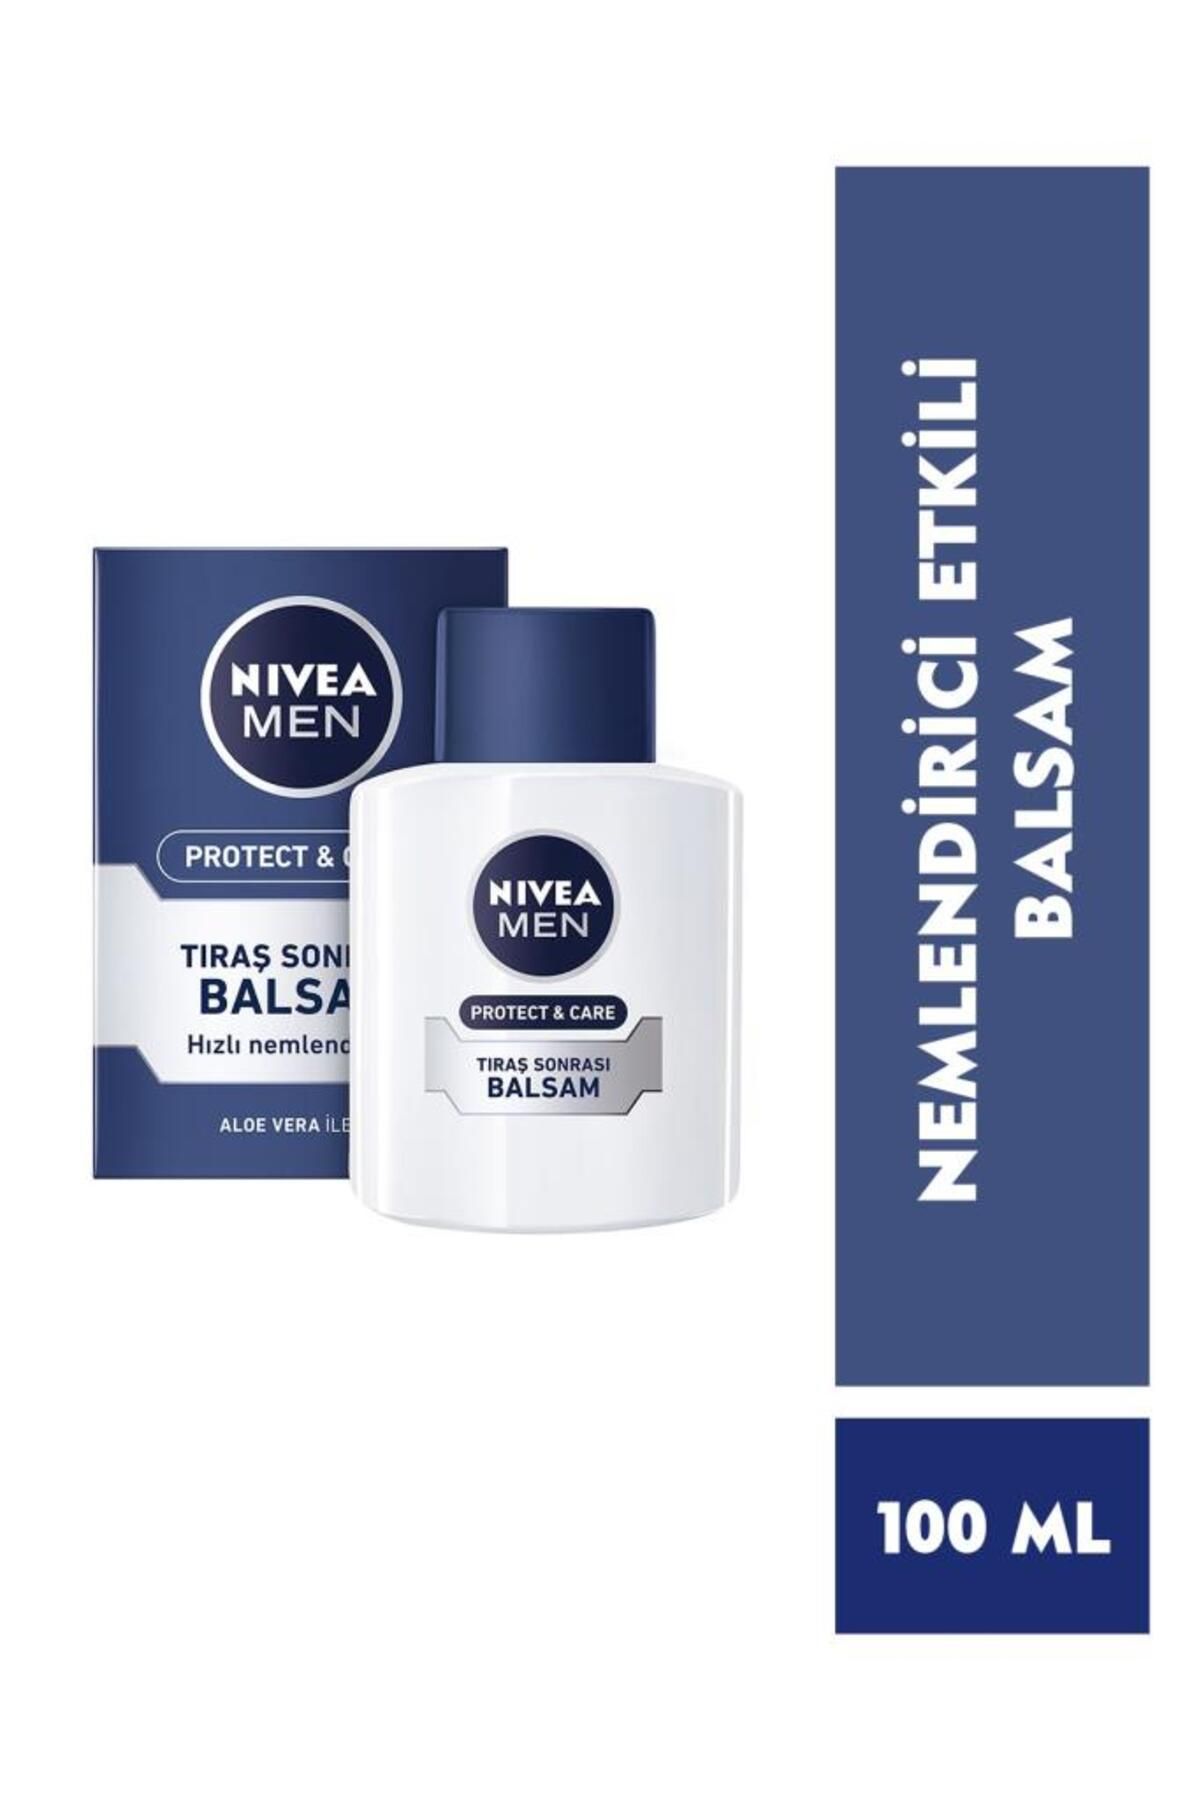 NIVEA MEN Erkek Tıraş Sonrası Balsam 100ml Protect&Care, Onarıcı, Yenileyici, Tahriş Önleyici, E Vitamini